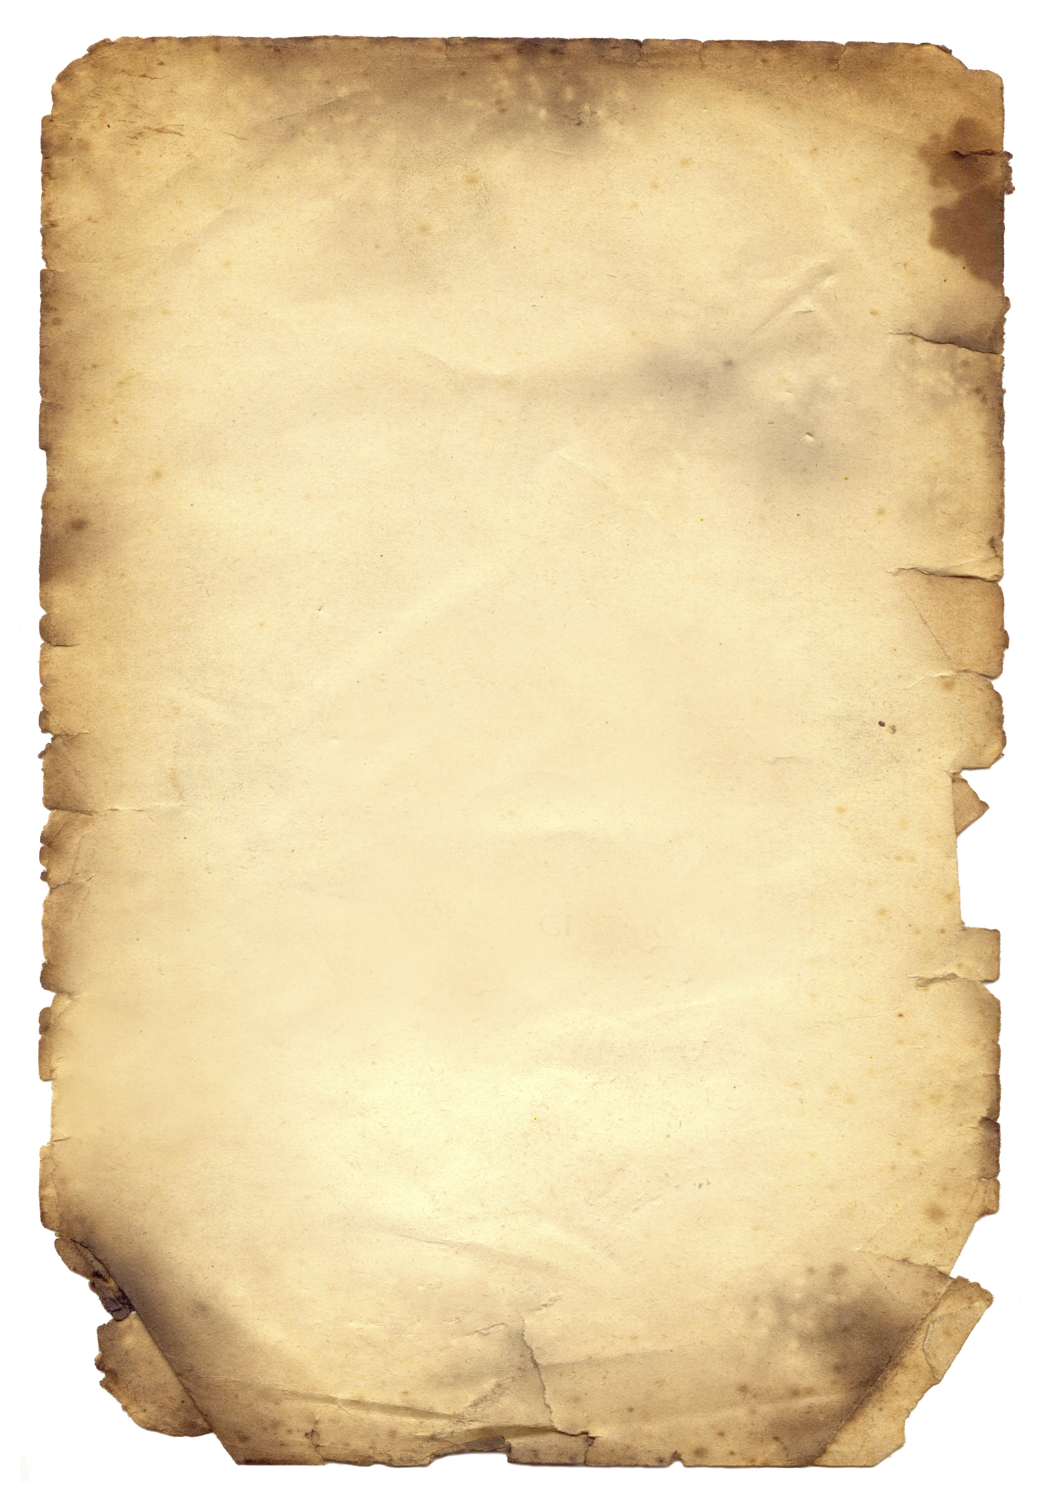 17-free-parchment-paper-template-images-old-parchment-paper-texture